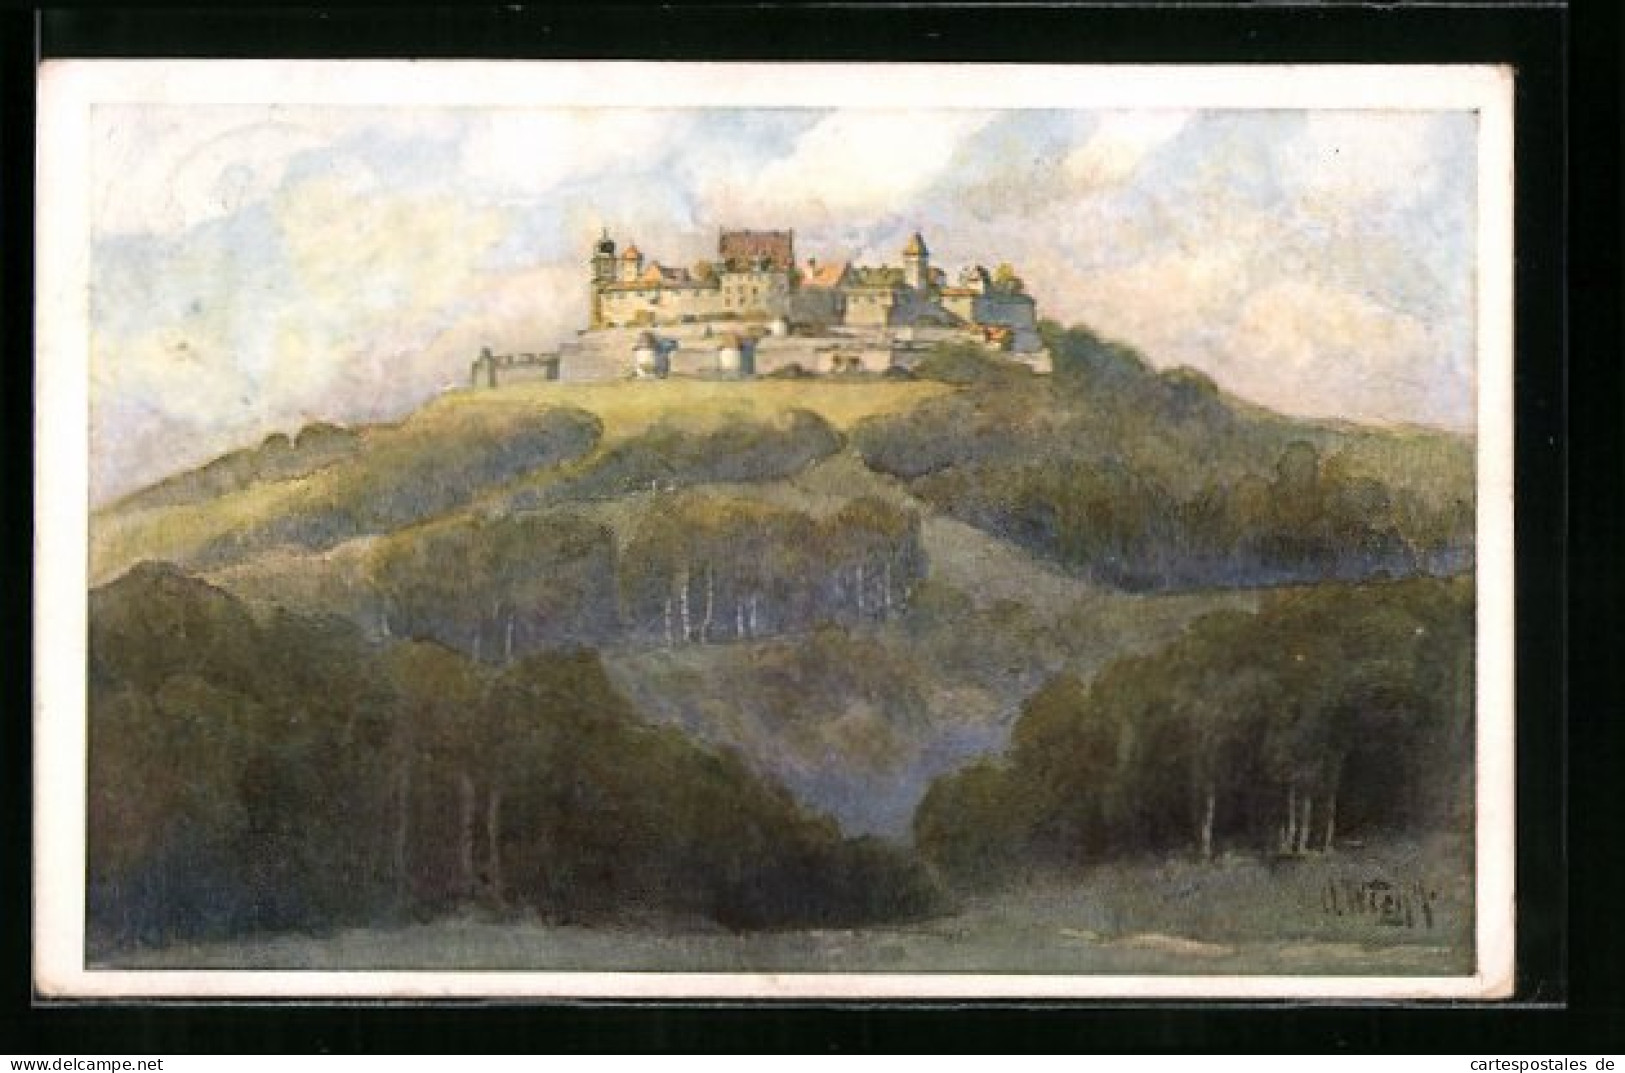 Künstler-AK Coburg, Festpostkarte Zur Coburger Festungsweihe, 6. Bis 8. Sept. 1924  - Coburg